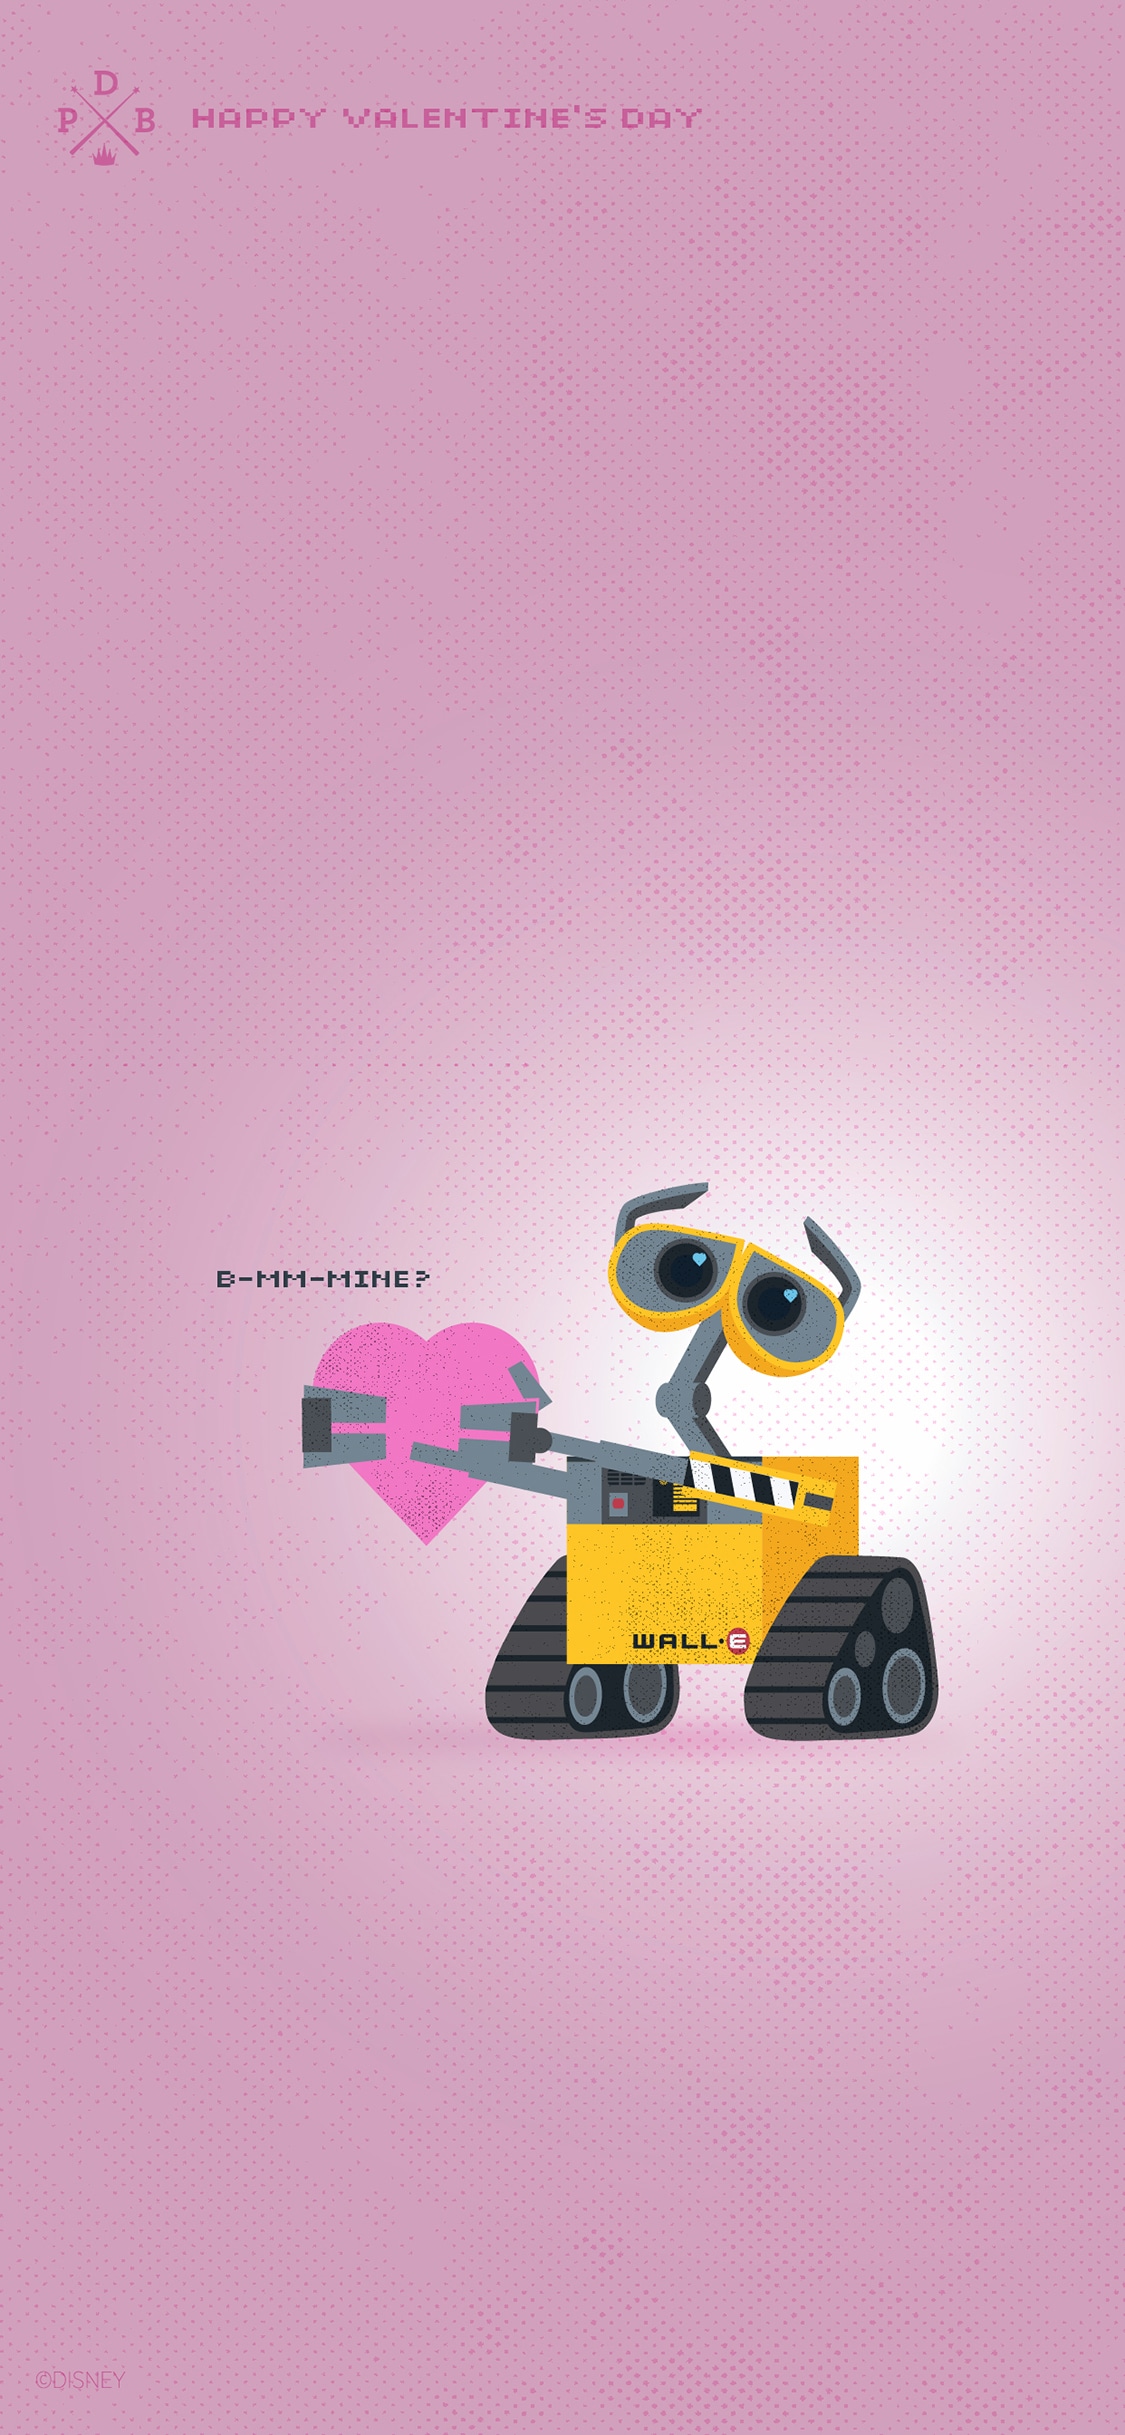 Chào mừng đến với hình nền Valentine\'s Day của Wall•E! Bức ảnh đầy hấp dẫn và độc đáo này sẽ là trái tim của chiếc điện thoại của bạn trong ngày lễ tình yêu. Nhấp vào để khám phá những tình cảm đầy ngọt ngào và đặc biệt cùng Wall•E trên chiếc điện thoại của bạn!